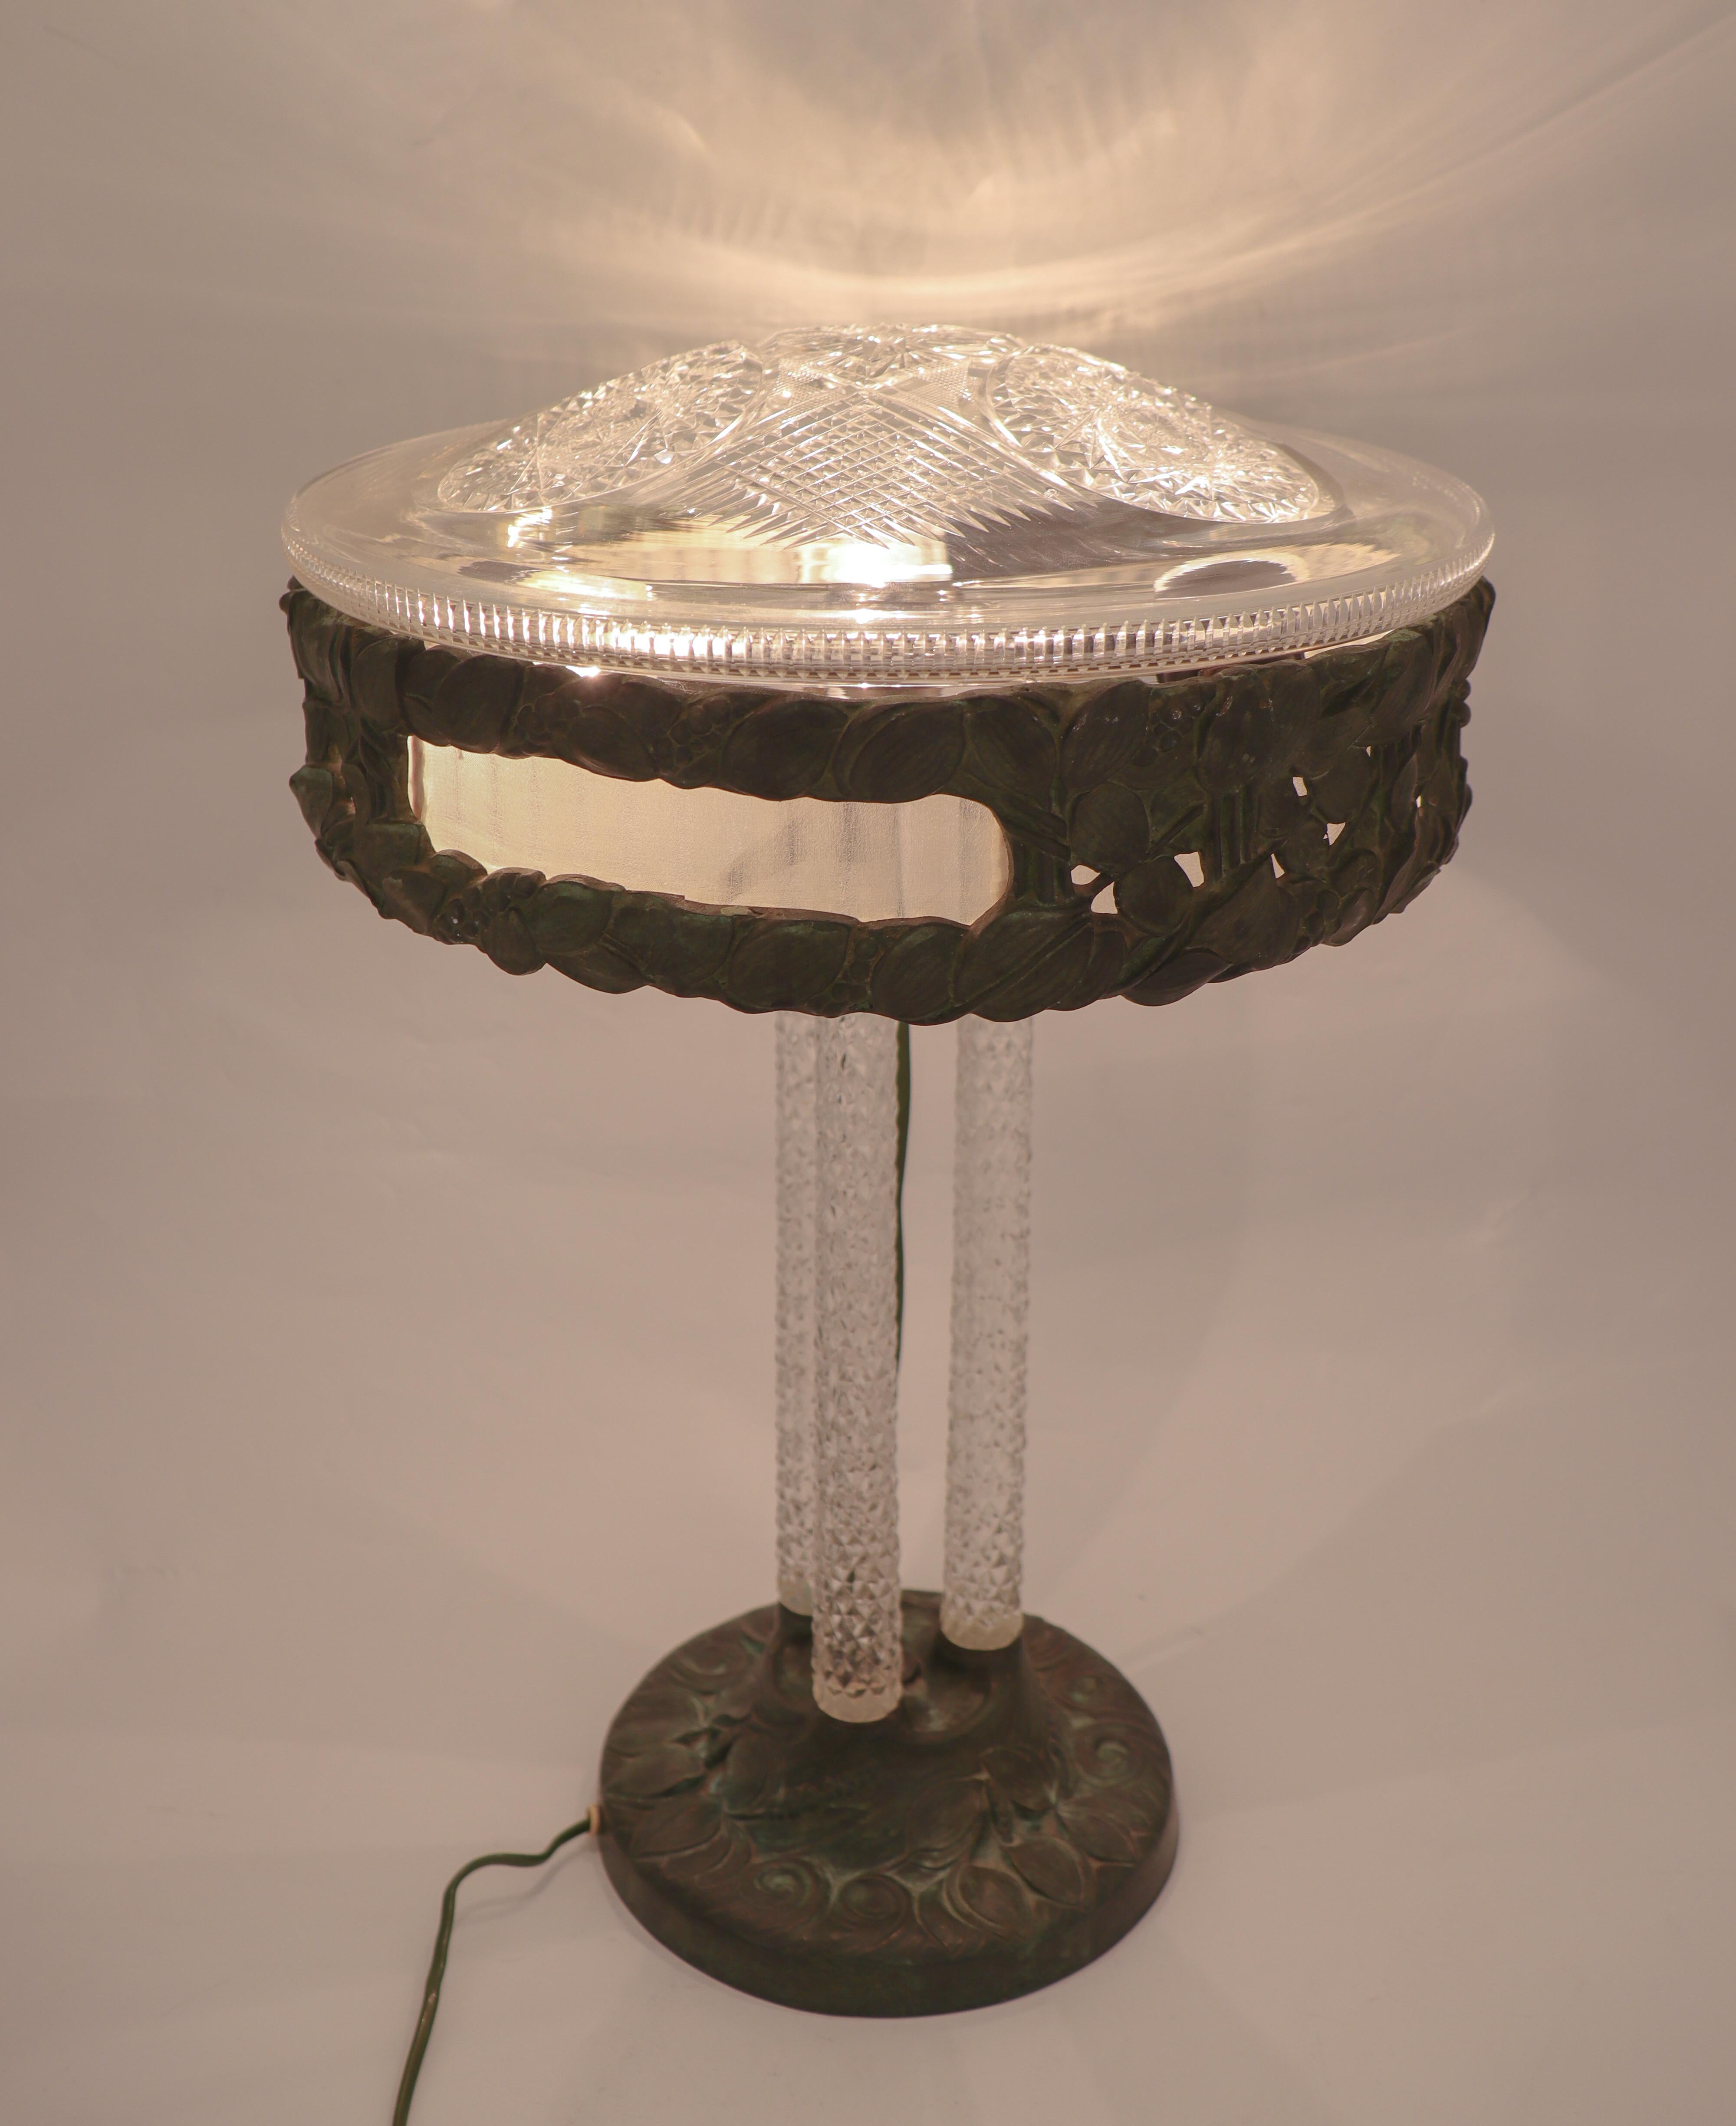 Une superbe et très rare lampe de table de la fabrique de lampes Arvid Böhlmarks à Stockholm. Cette lampe a été conçue en 1909 et possède une base et un plateau en bronze, de superbes colonnes en cristal et un abat-jour en cristal. La lampe est